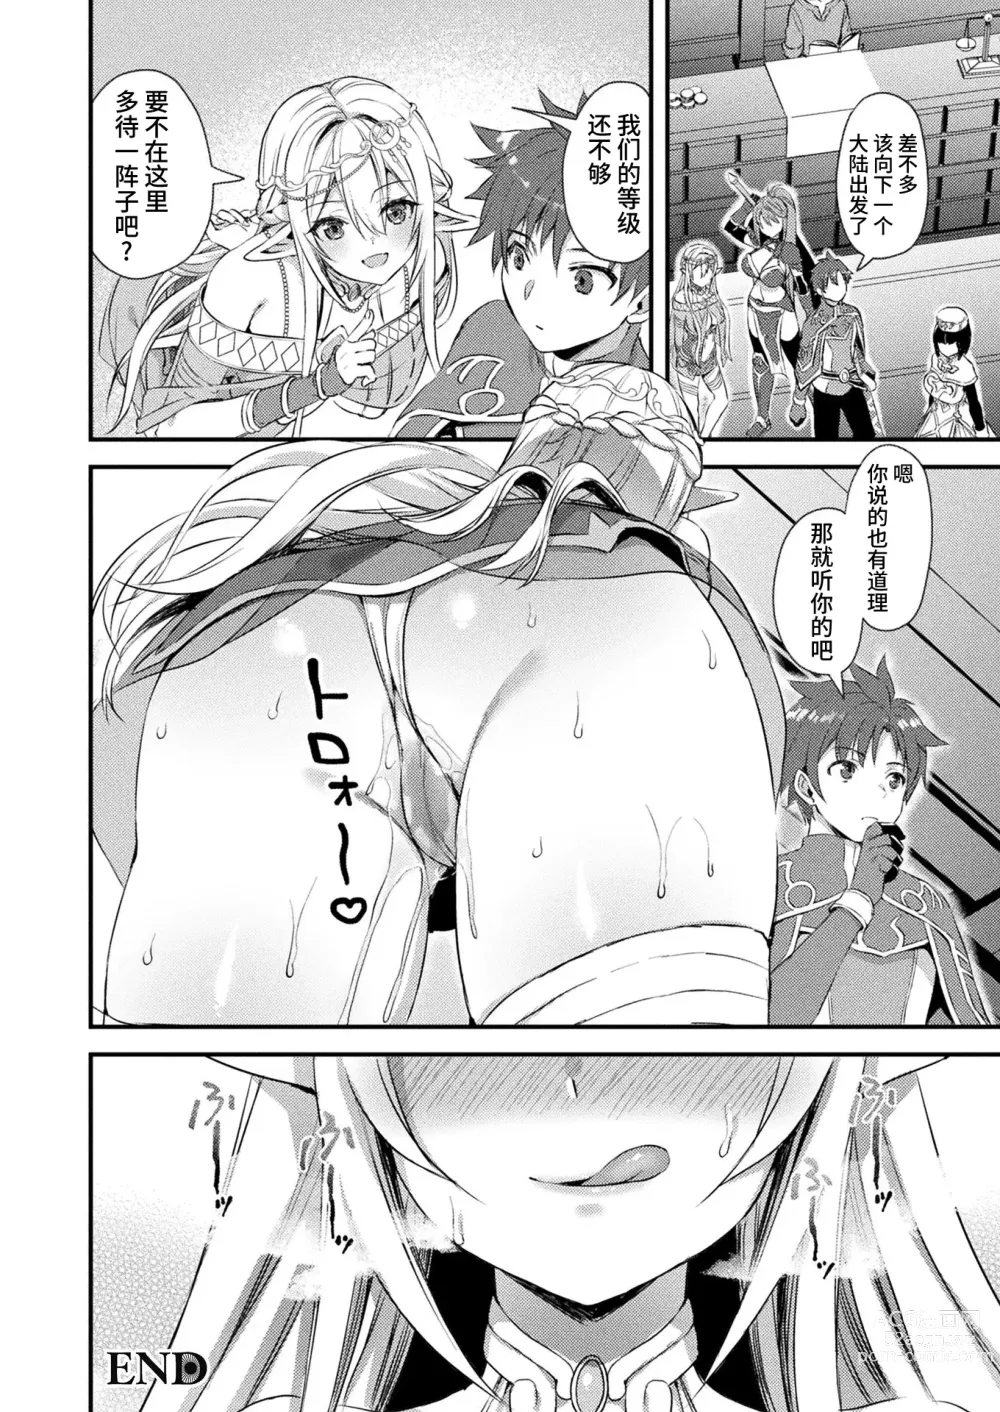 Page 44 of manga Isekai Elf Hatsujou no Magan